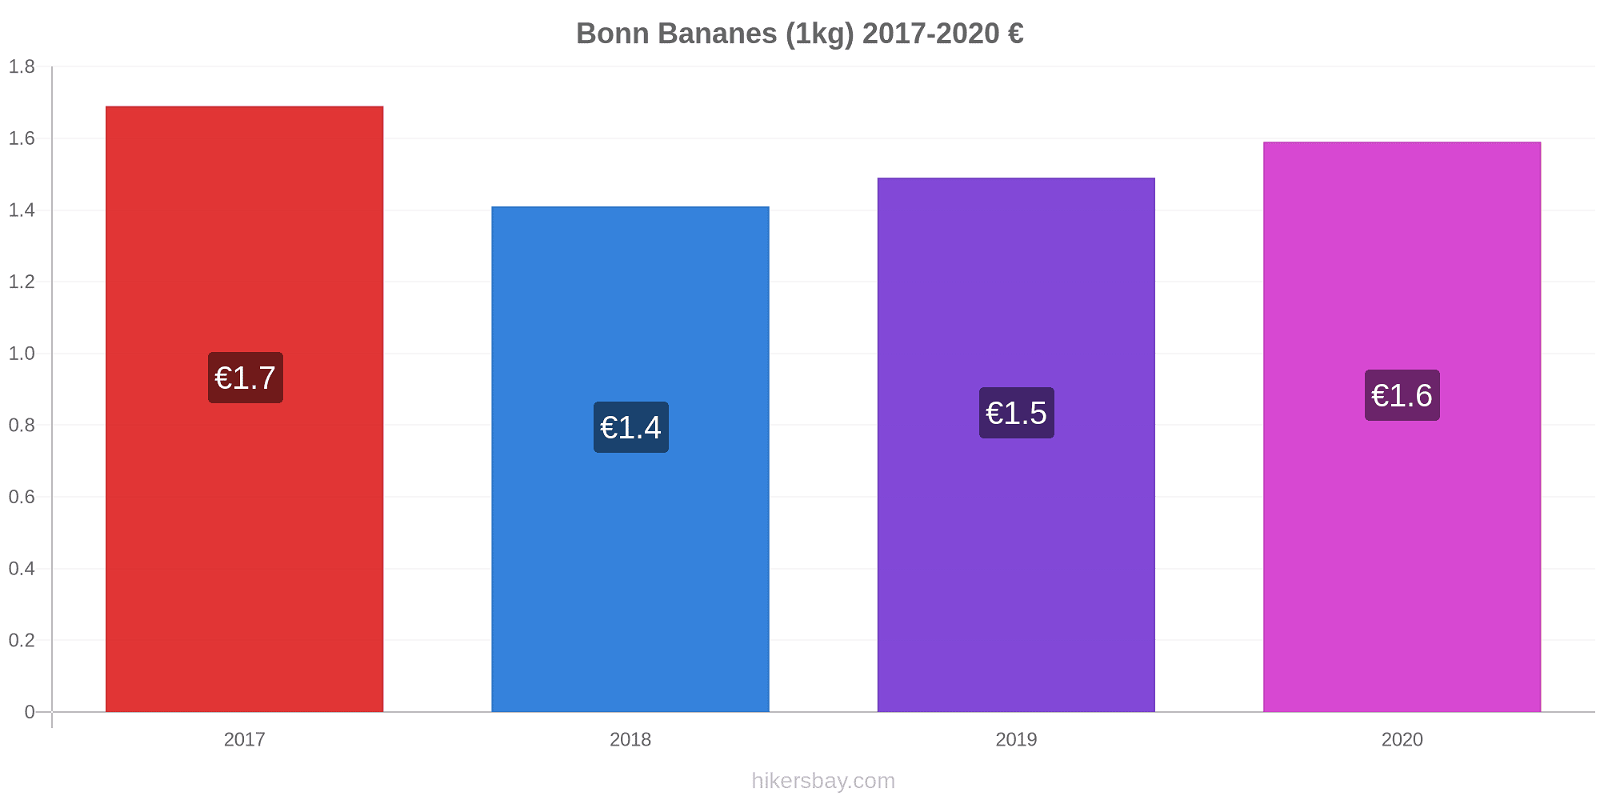 Bonn changements de prix Bananes (1kg) hikersbay.com